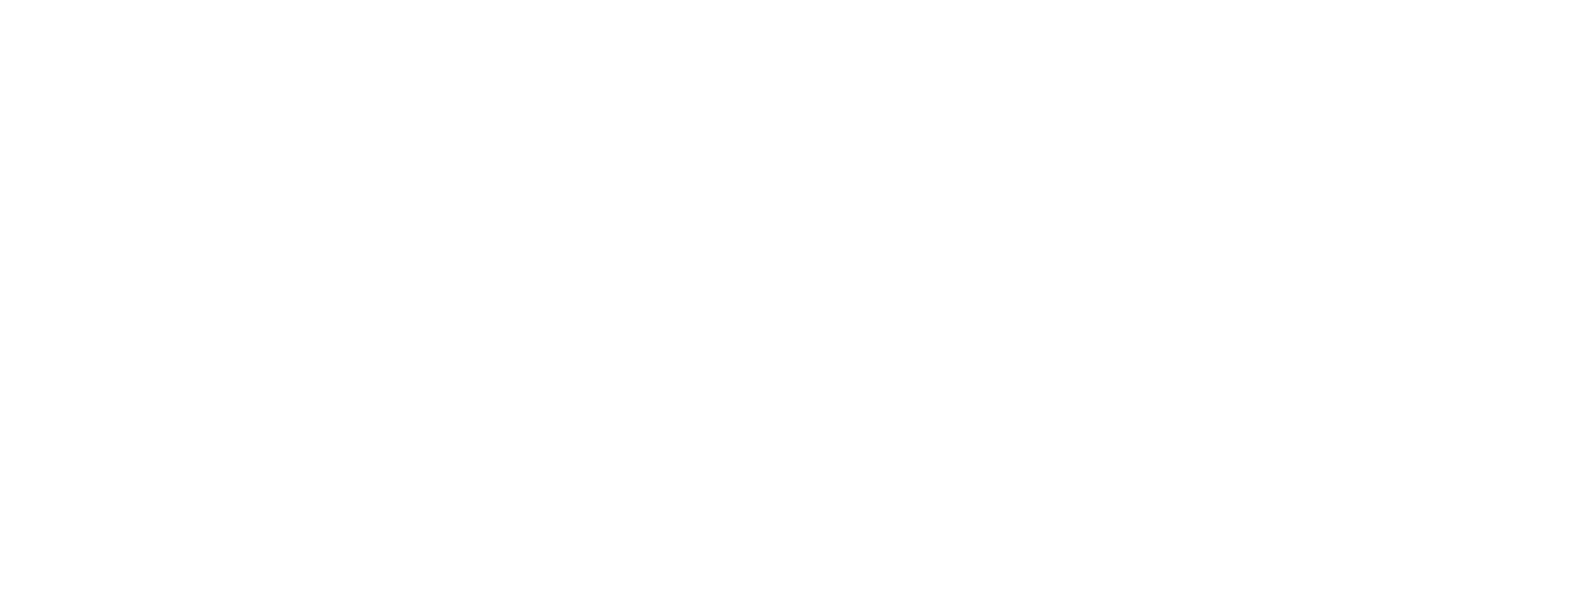 中古車輸出貿易統計のグラフ